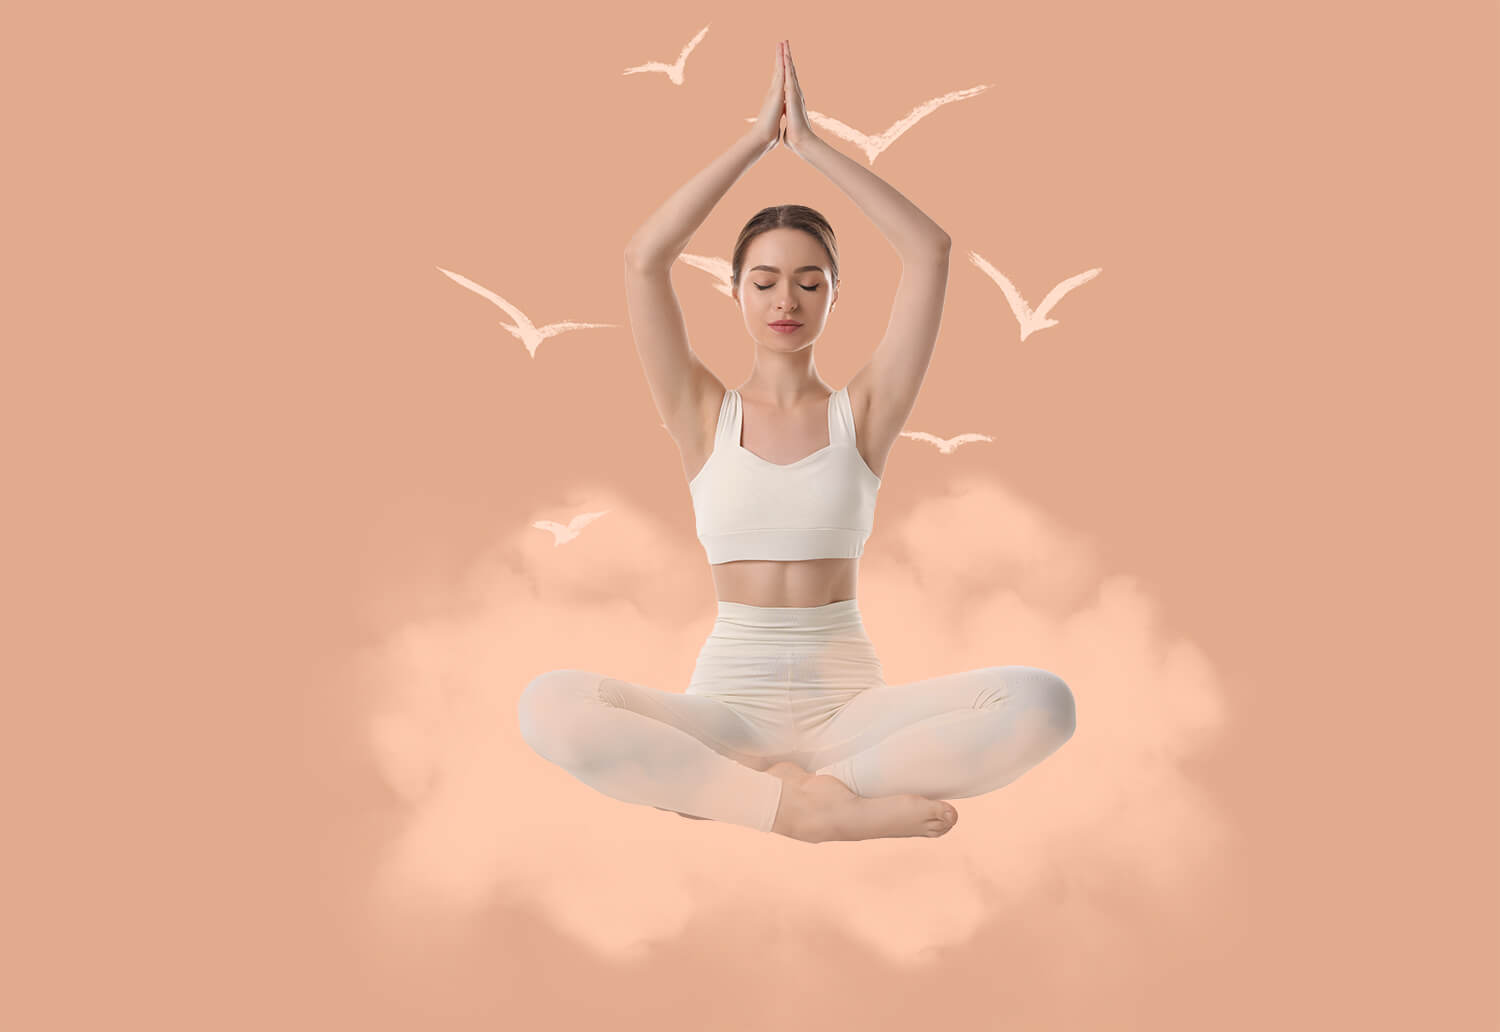 Stili Di Yoga Gentile Che Favoriscono L’allungamento, Il Rilassamento E La Calma 2